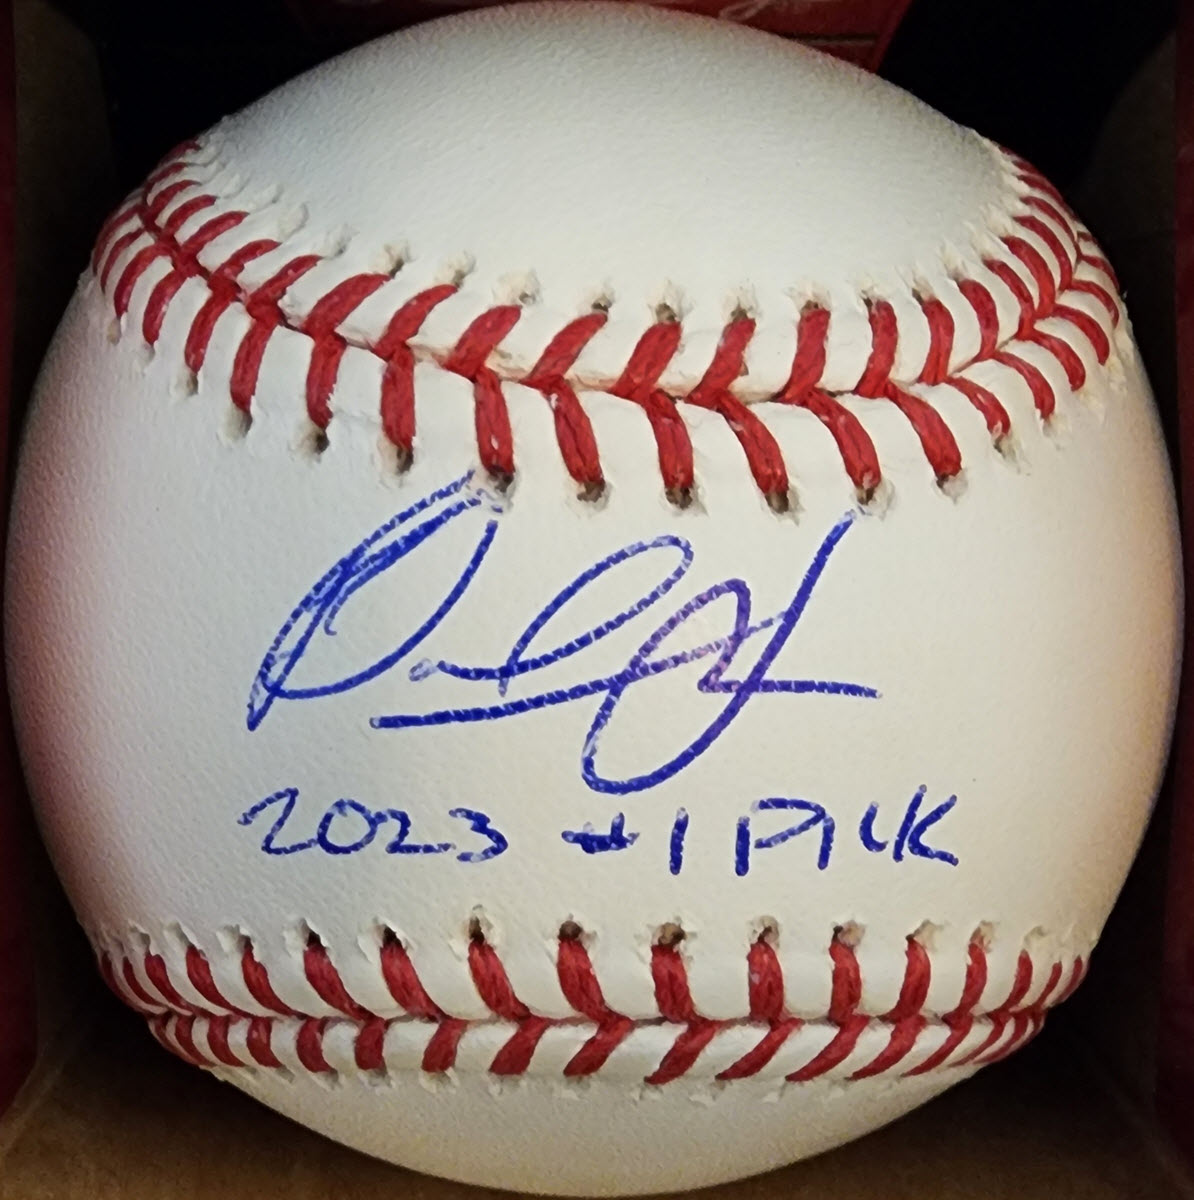 Paul Skenes Autographed Baseball Inscribed 2023 #1 Pick v1